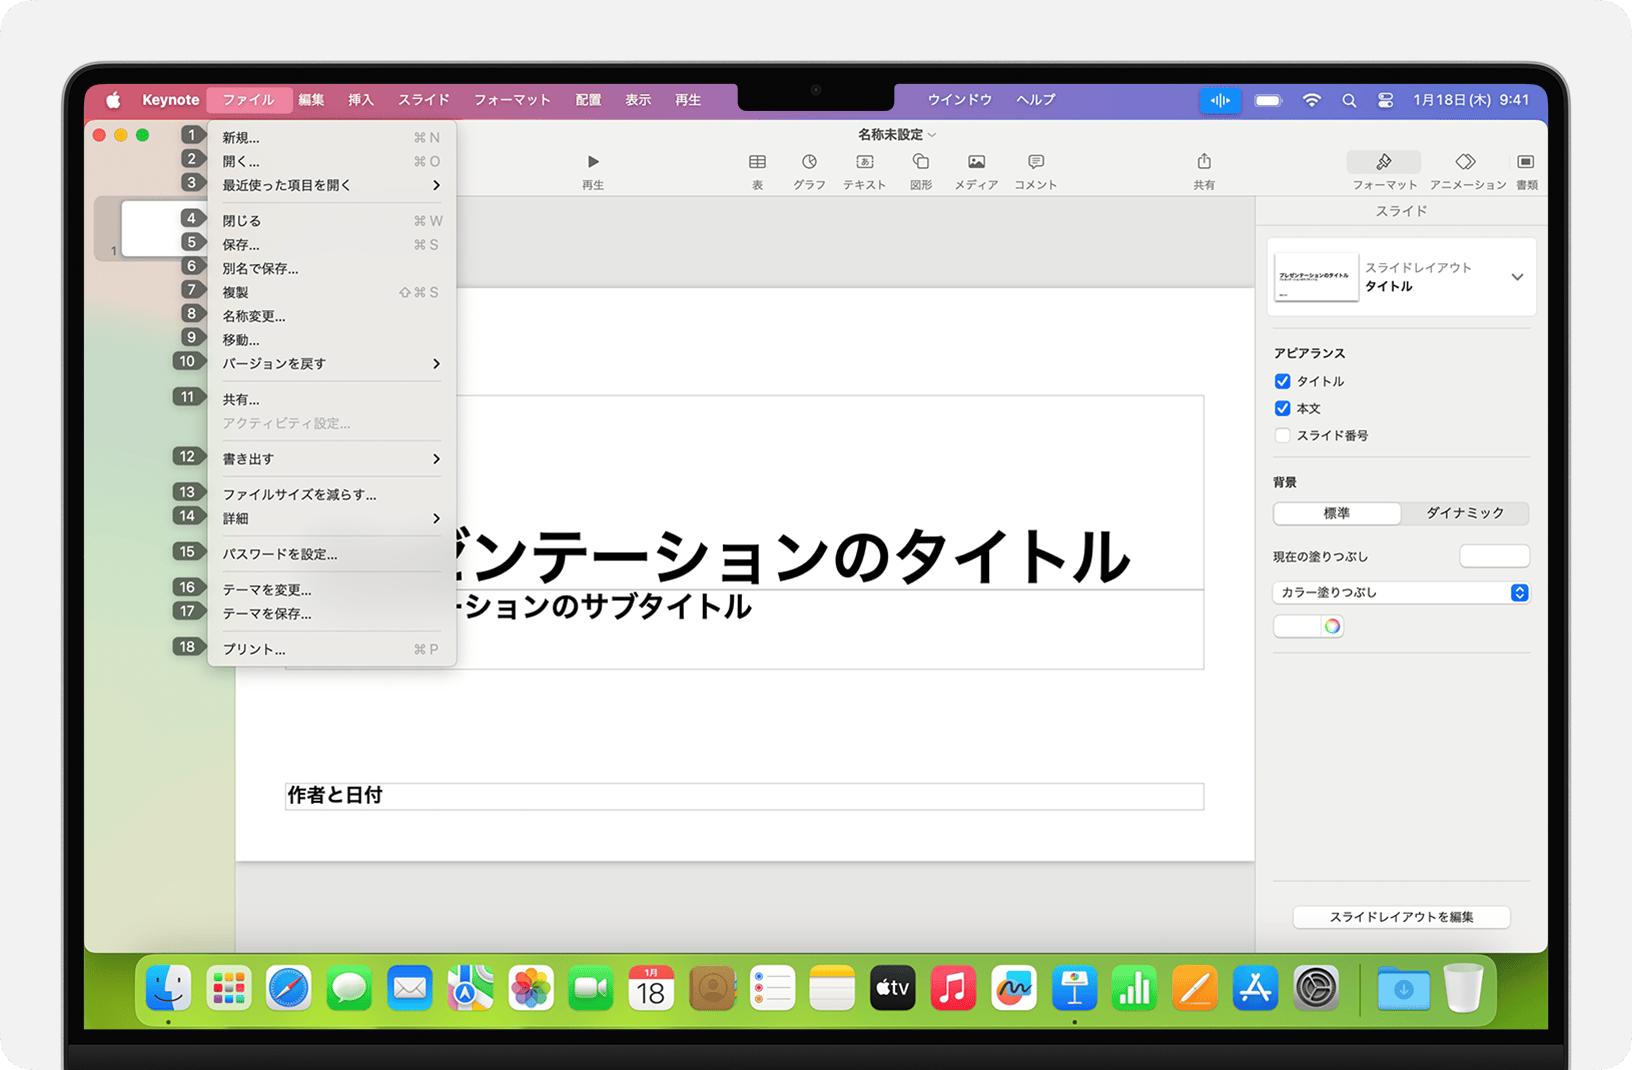 macOS Sonoma 搭載 Mac Book Pro の音声コントロールによって項目番号が表示されているところ